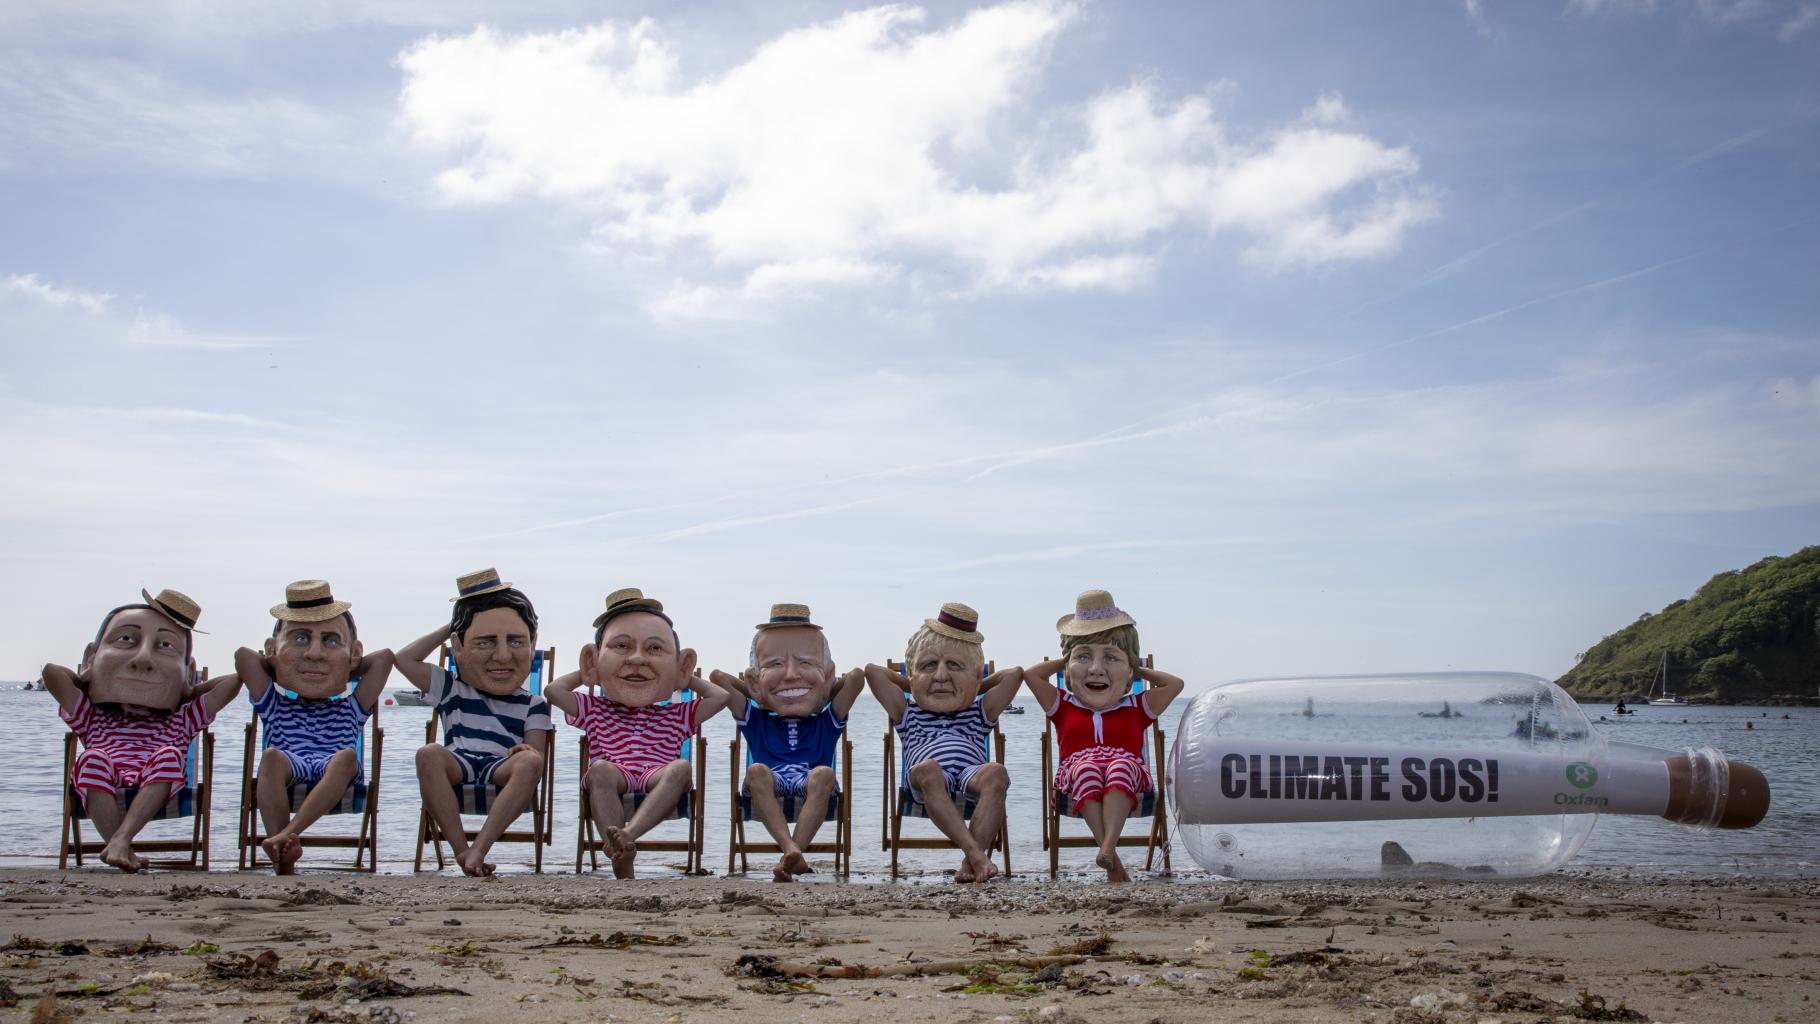 Aktivist*innen posieren als G7-Regierungschef*innen am Strand. Sie tragen gestreifte Badesachen und Sonnenhüte.